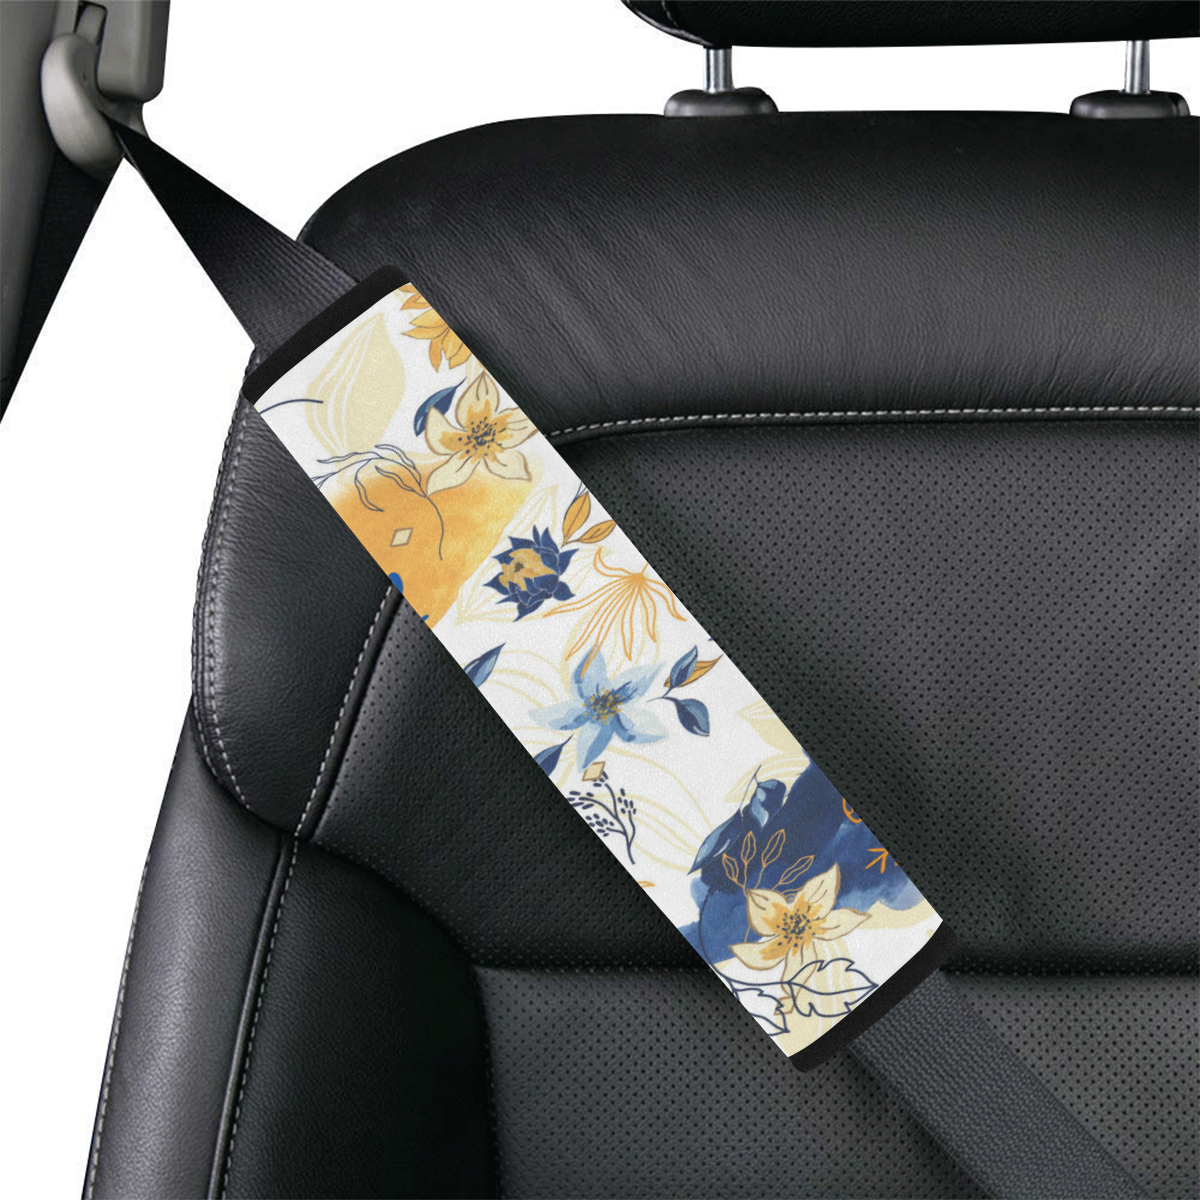 Anne Car Seat Belt Cover 7''x12.6''